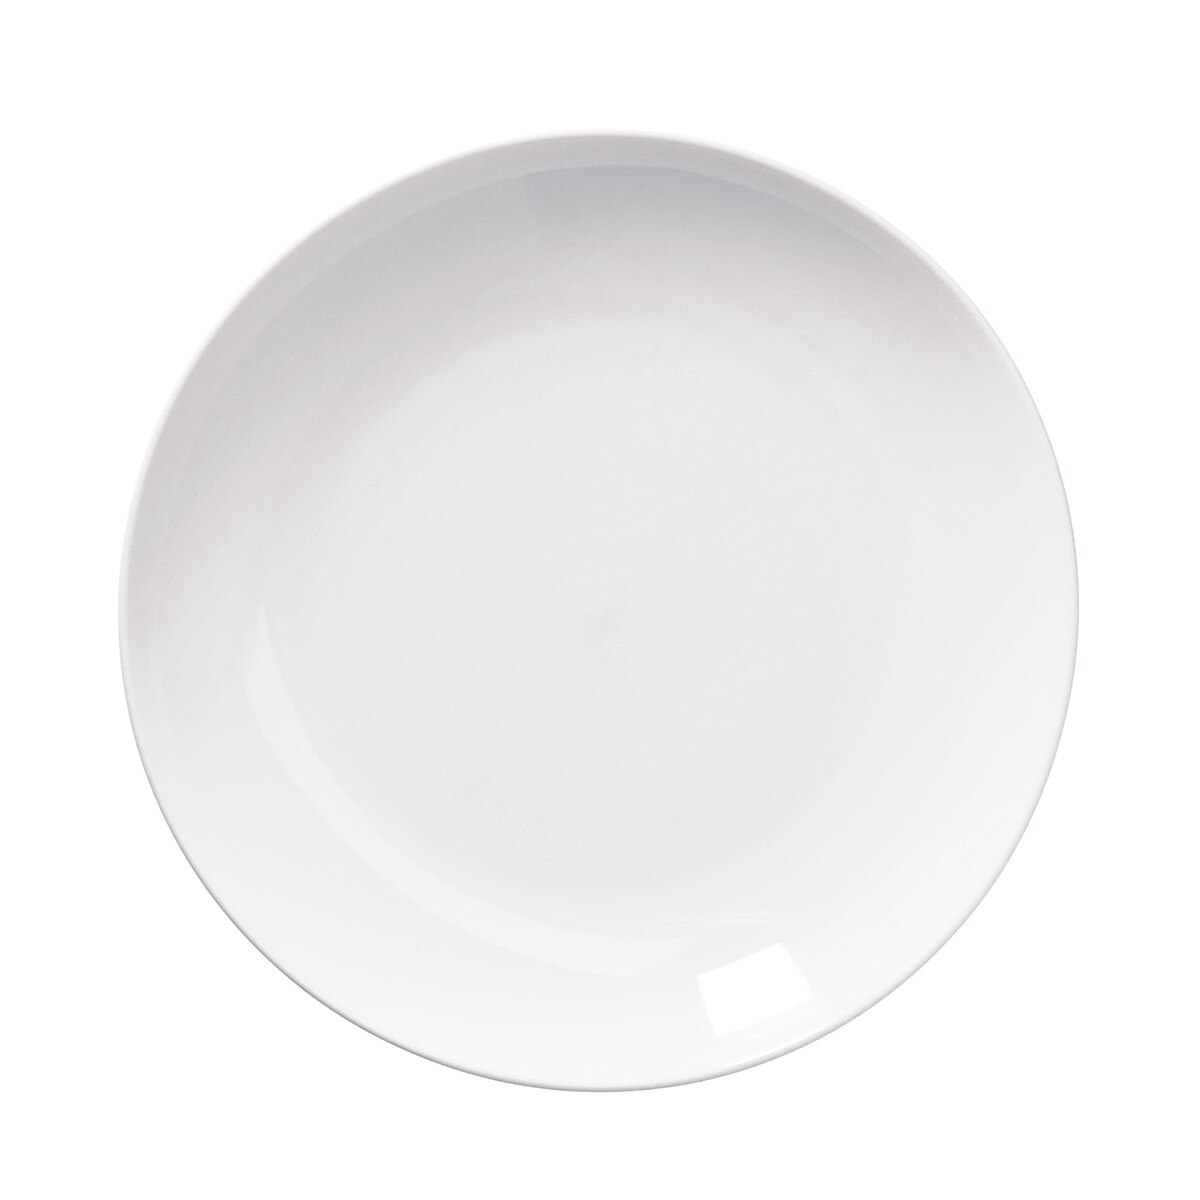 Zestaw 2 mis okrągłych Essenziale Gourmet - Biały, 30 cm